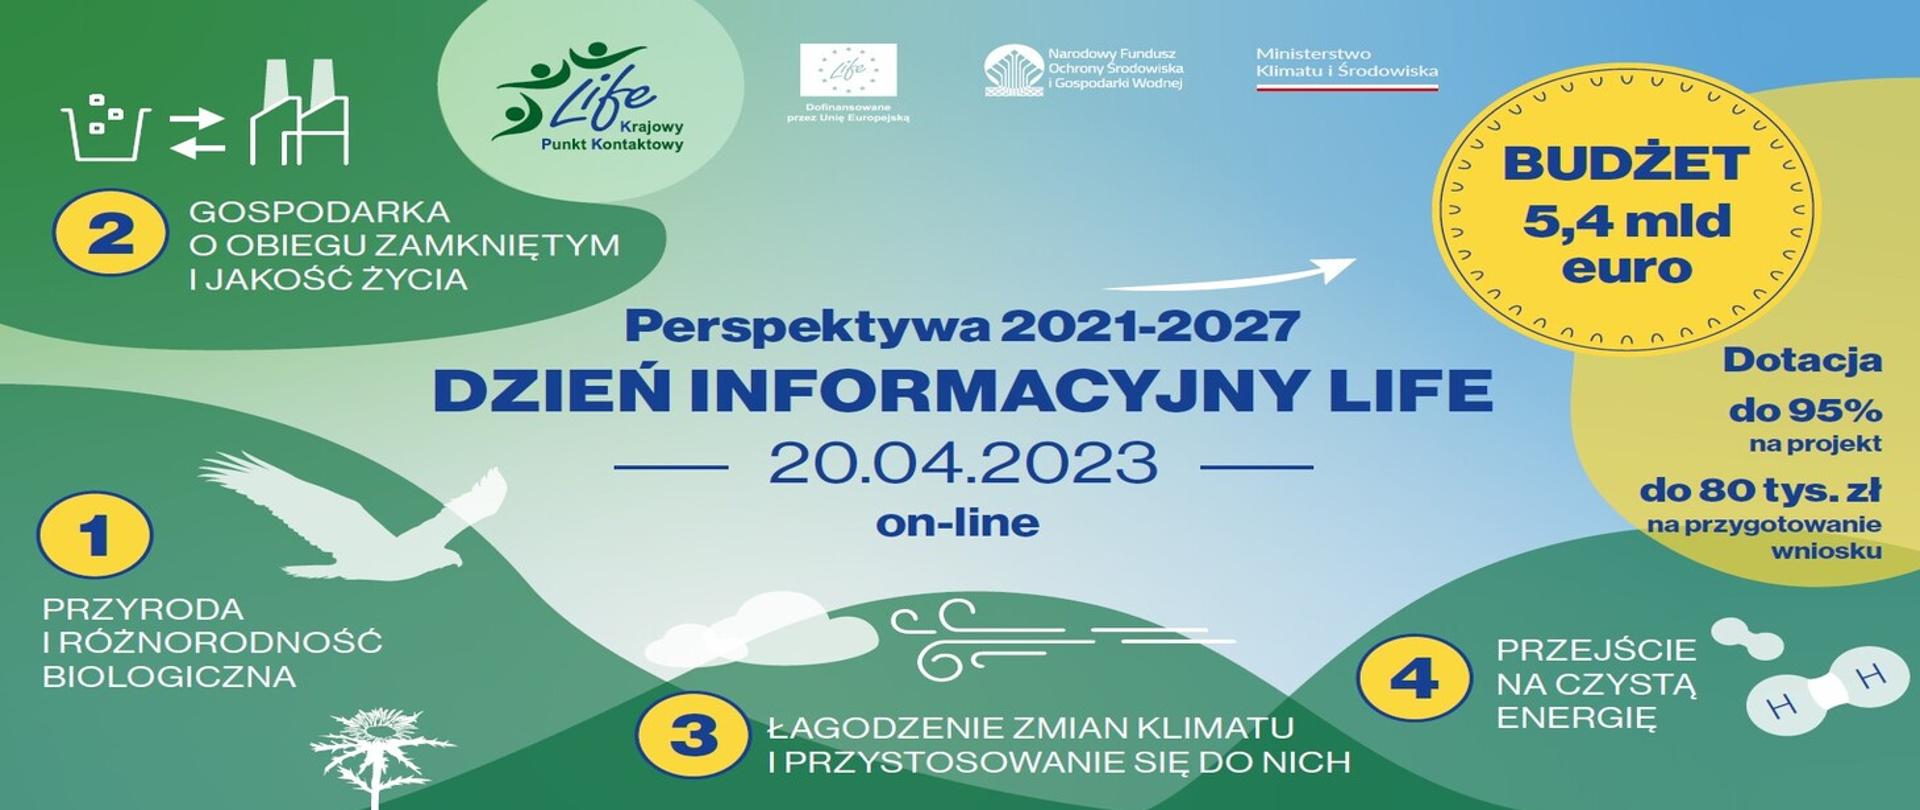 Opis alternatywny - plansza informacyjna na temat dnia informacyjnego LIFE z datą (20.04.2023), budżetem programu na lata 2021-20027 (5,4 mld euro) i wskazaniem podprogramów LIFE (gospodarka o obiegu zamkniętym i jakość życia, przyroda i bioróżnorodność biologiczna, łagodzenie zmian klimatu i przystosowanie się do nich, przejście na czystą energię).
